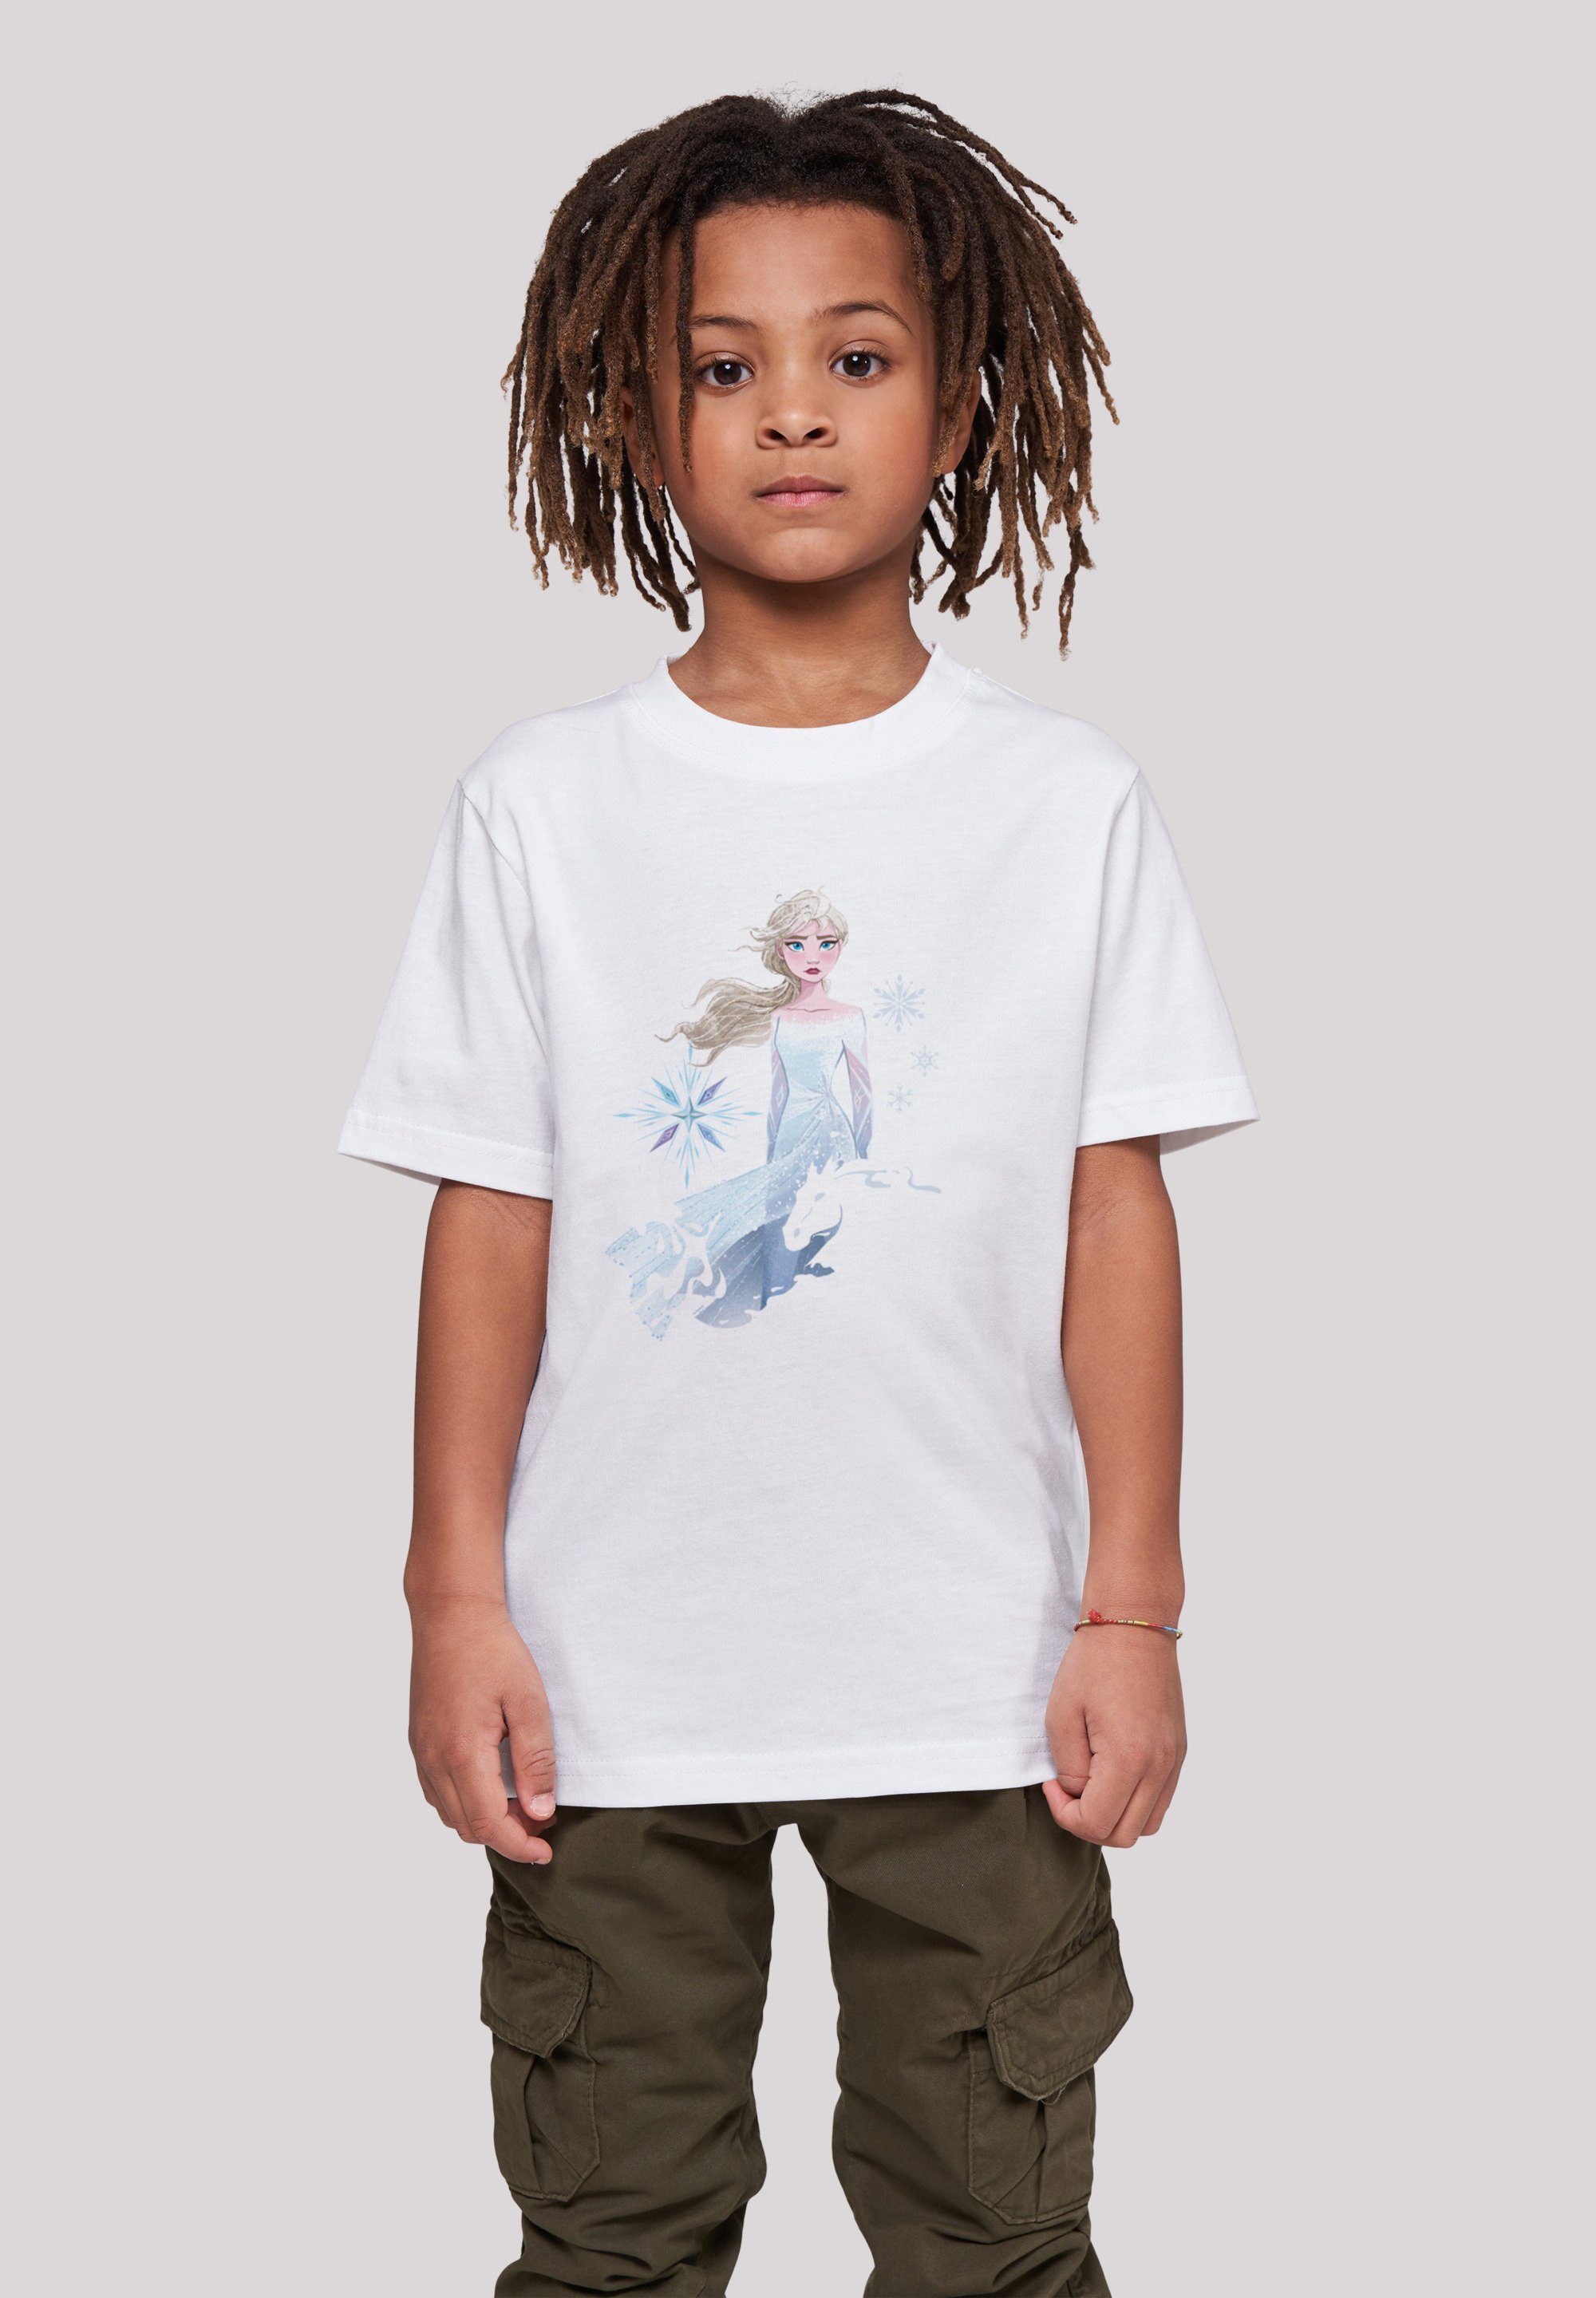 F4NT4STIC T-Shirt Disney Frozen 2 Elsa Nokk Wassergeist Pferd Silhouette Unisex Kinder,Premium Merch,Jungen,Mädchen,Bedruckt weiß